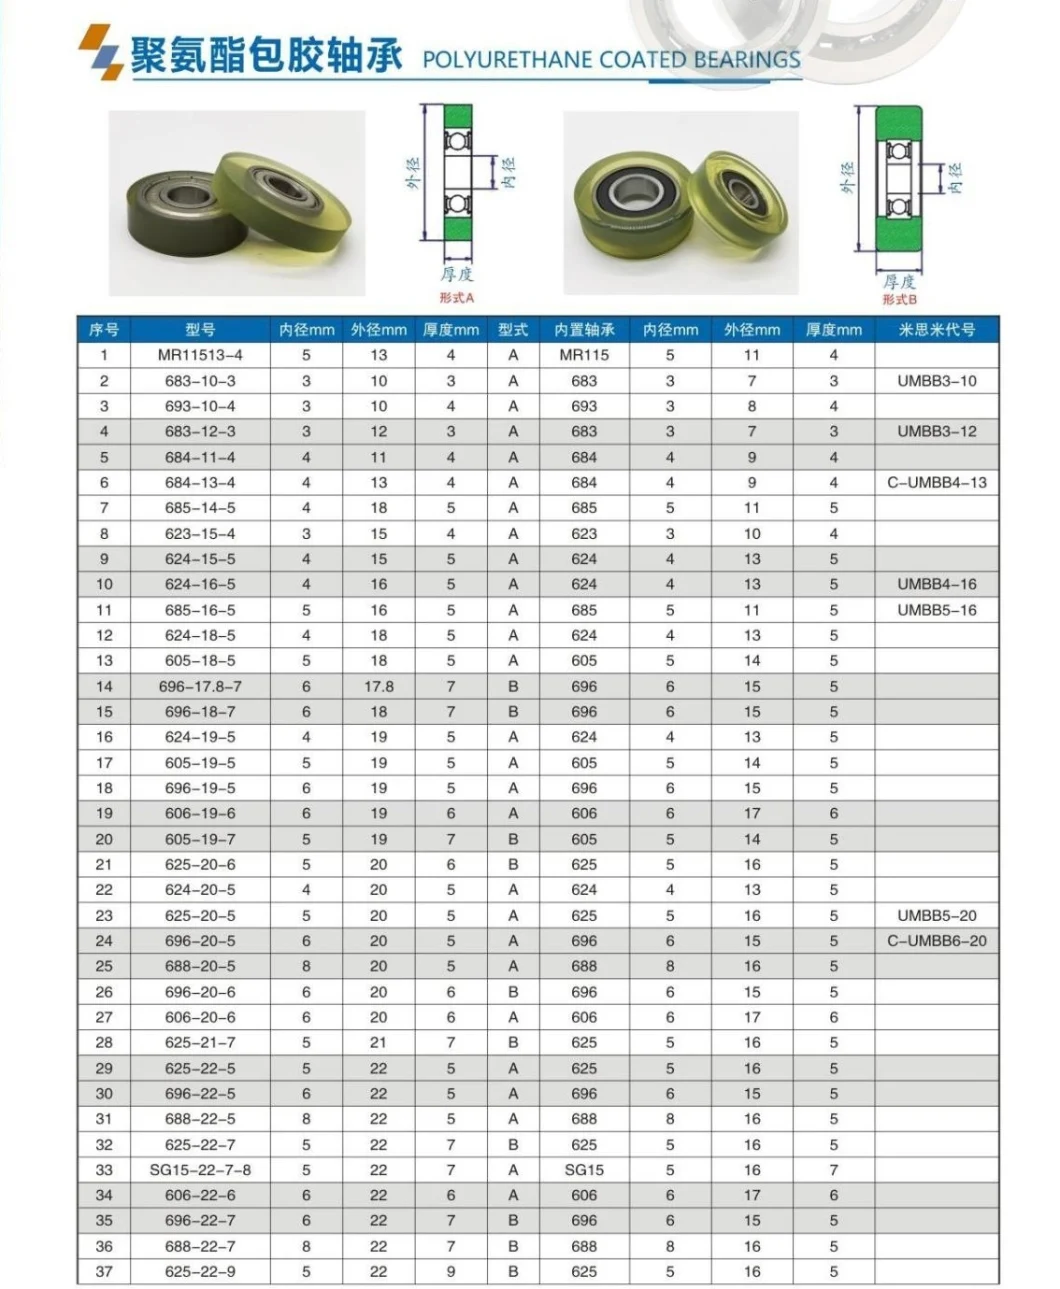 Silicon Rubber / Urethane Molded Bearings (UMBB3-10 UMBB3-12 C-UMBB4-13 UMBB4-16 UMBB5-16 UMBB5-20 C-UMBB6-20)